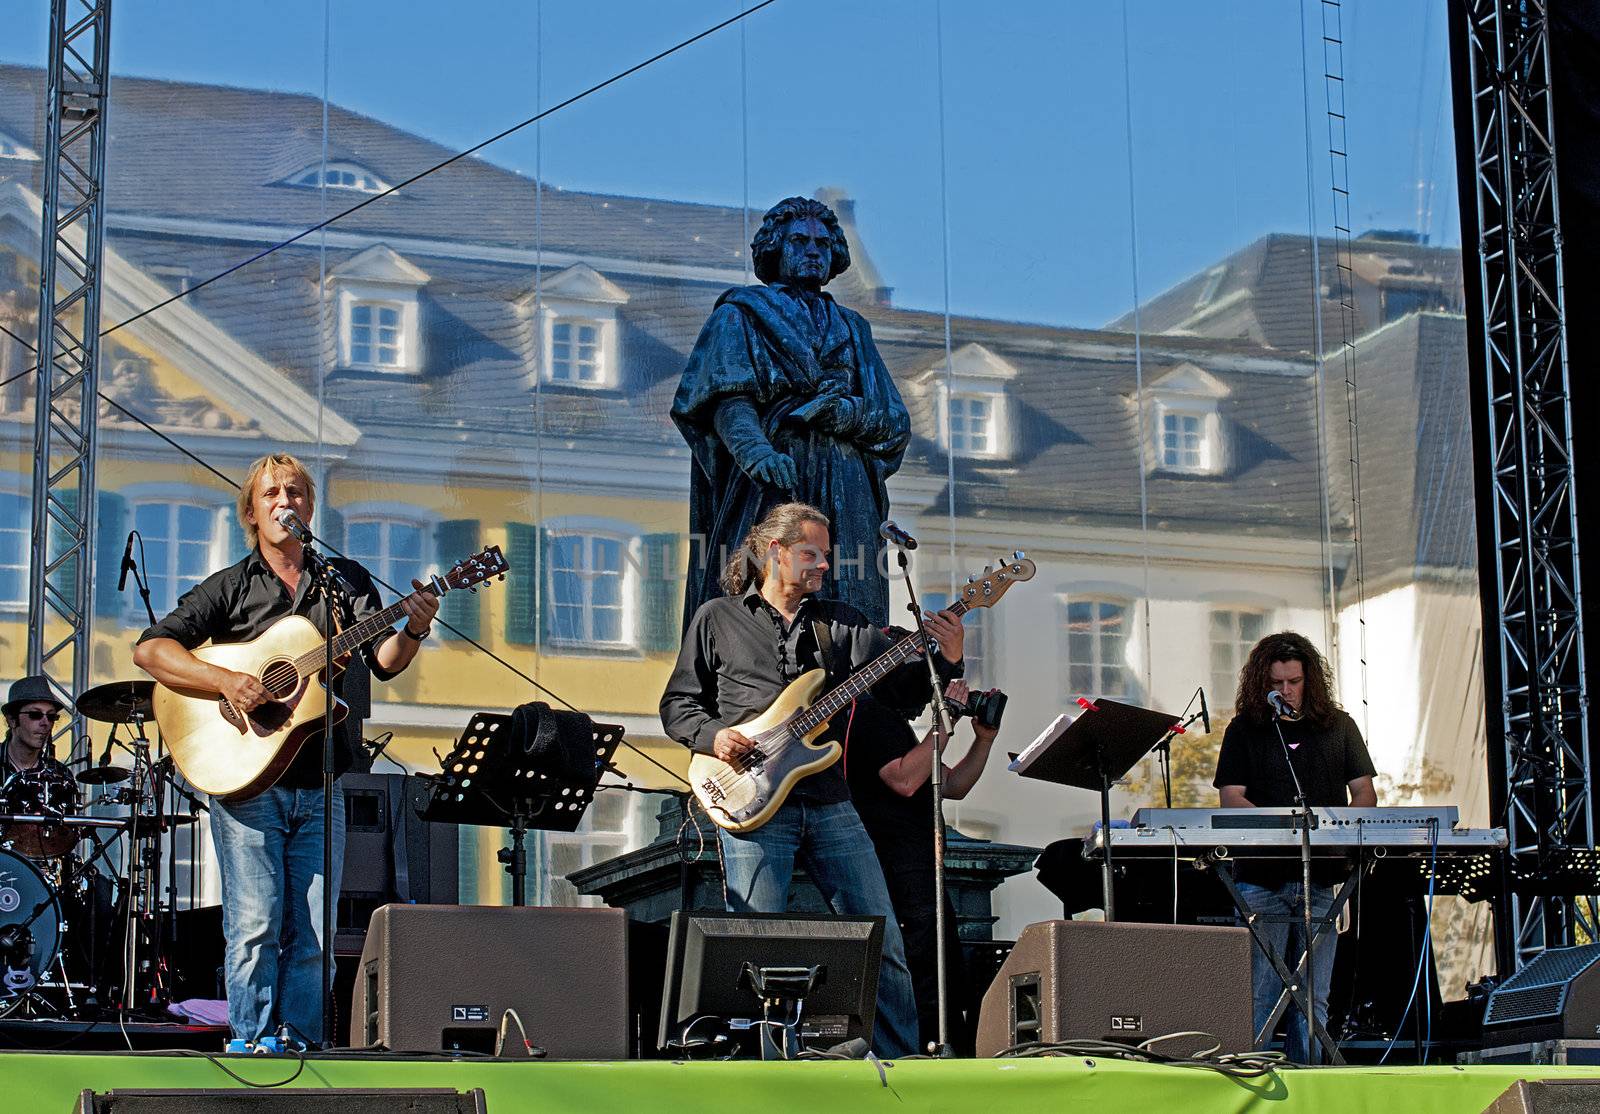 German Day of Unity, Bonn, photo taken on 1st of October 2011, concert of Knittler